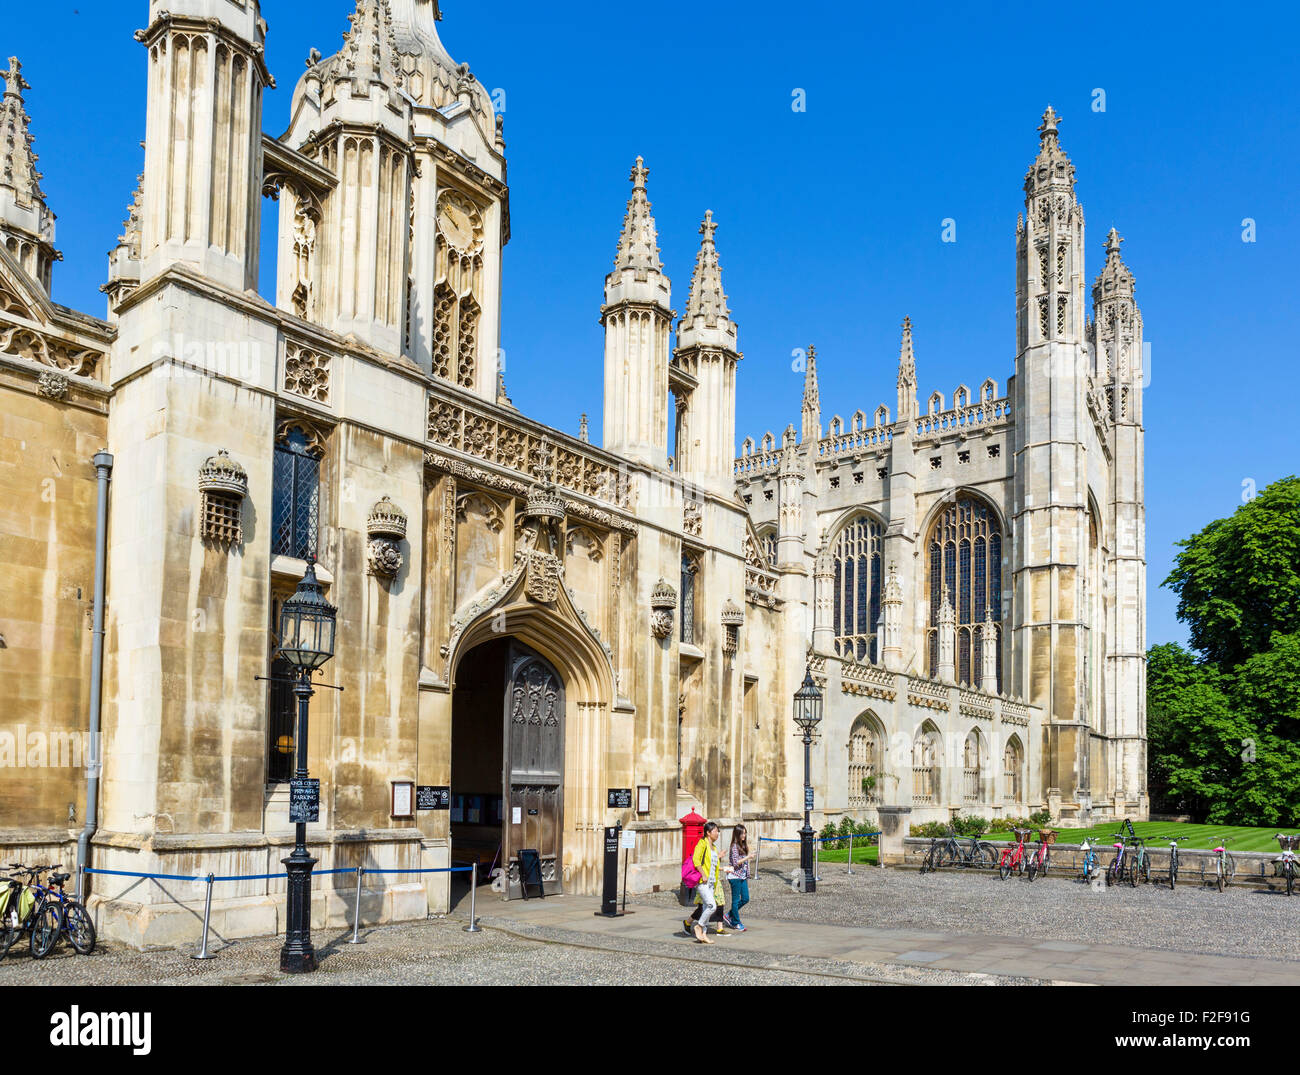 La entrada de King's College, Universidad de Cambridge, Cambridge, Cambridgeshire, Inglaterra, Reino Unido. Foto de stock